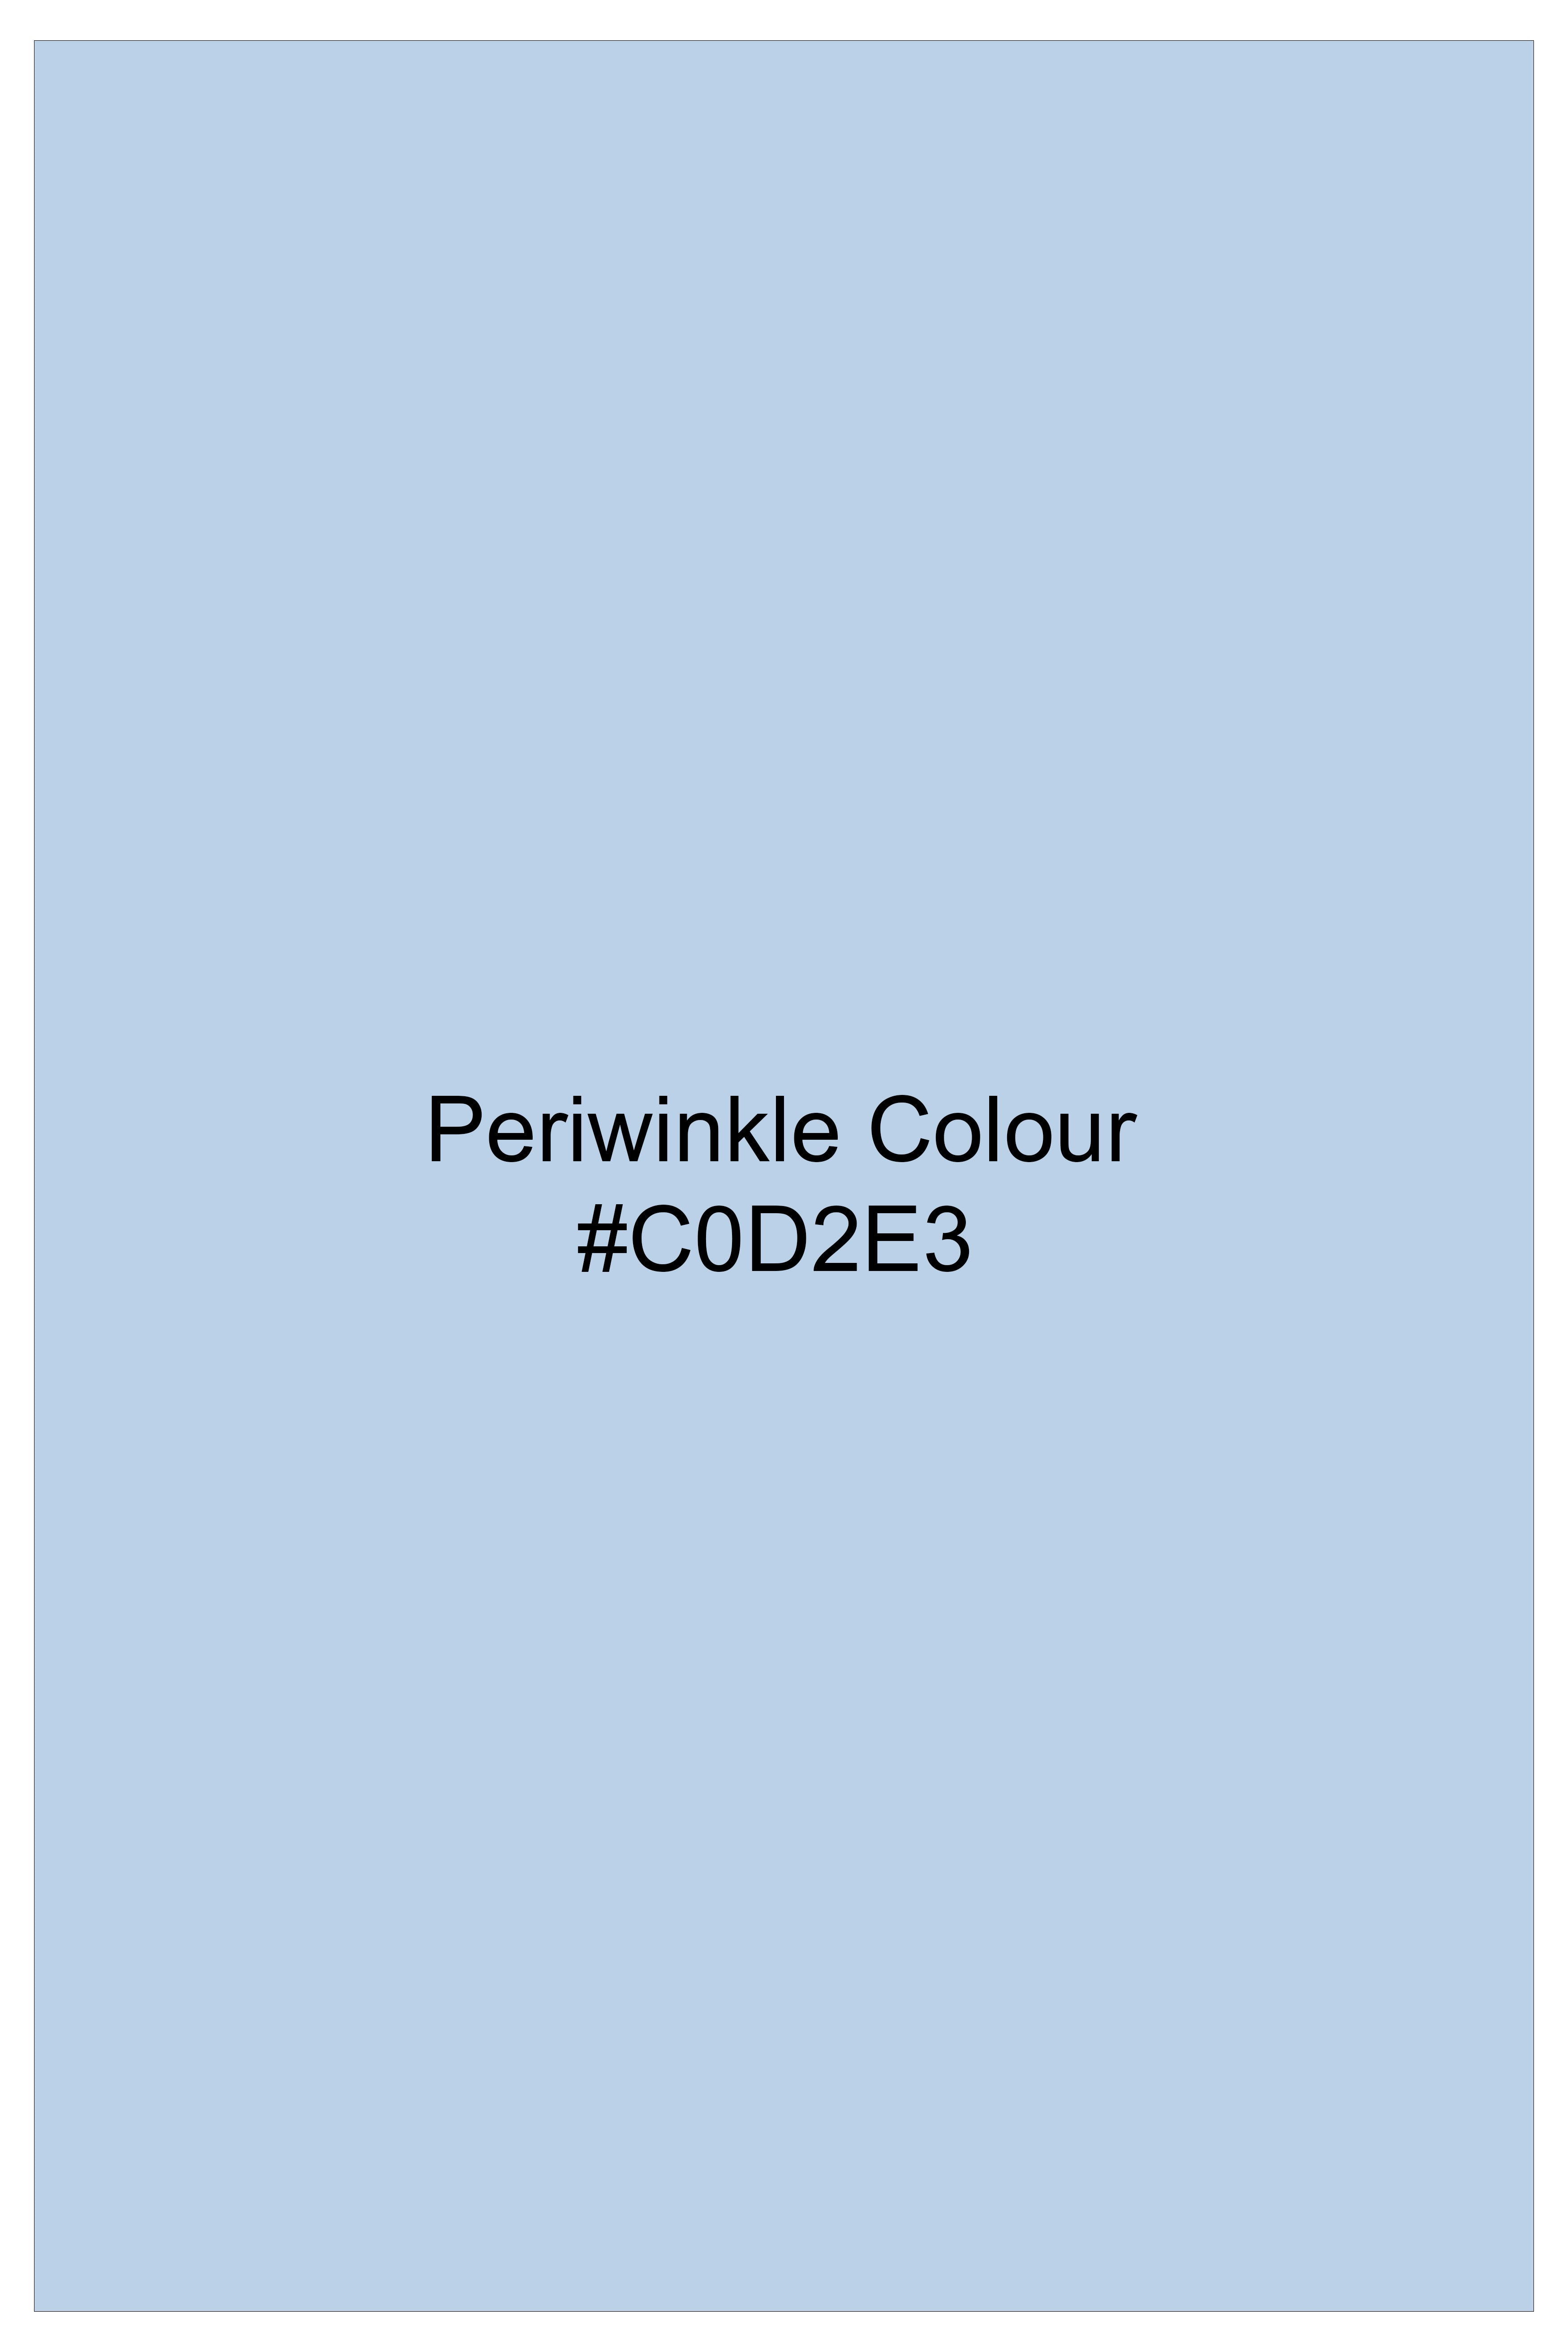 Periwinkle Blue Solid Subtle Sheen Super Soft Premium Cotton Boxer